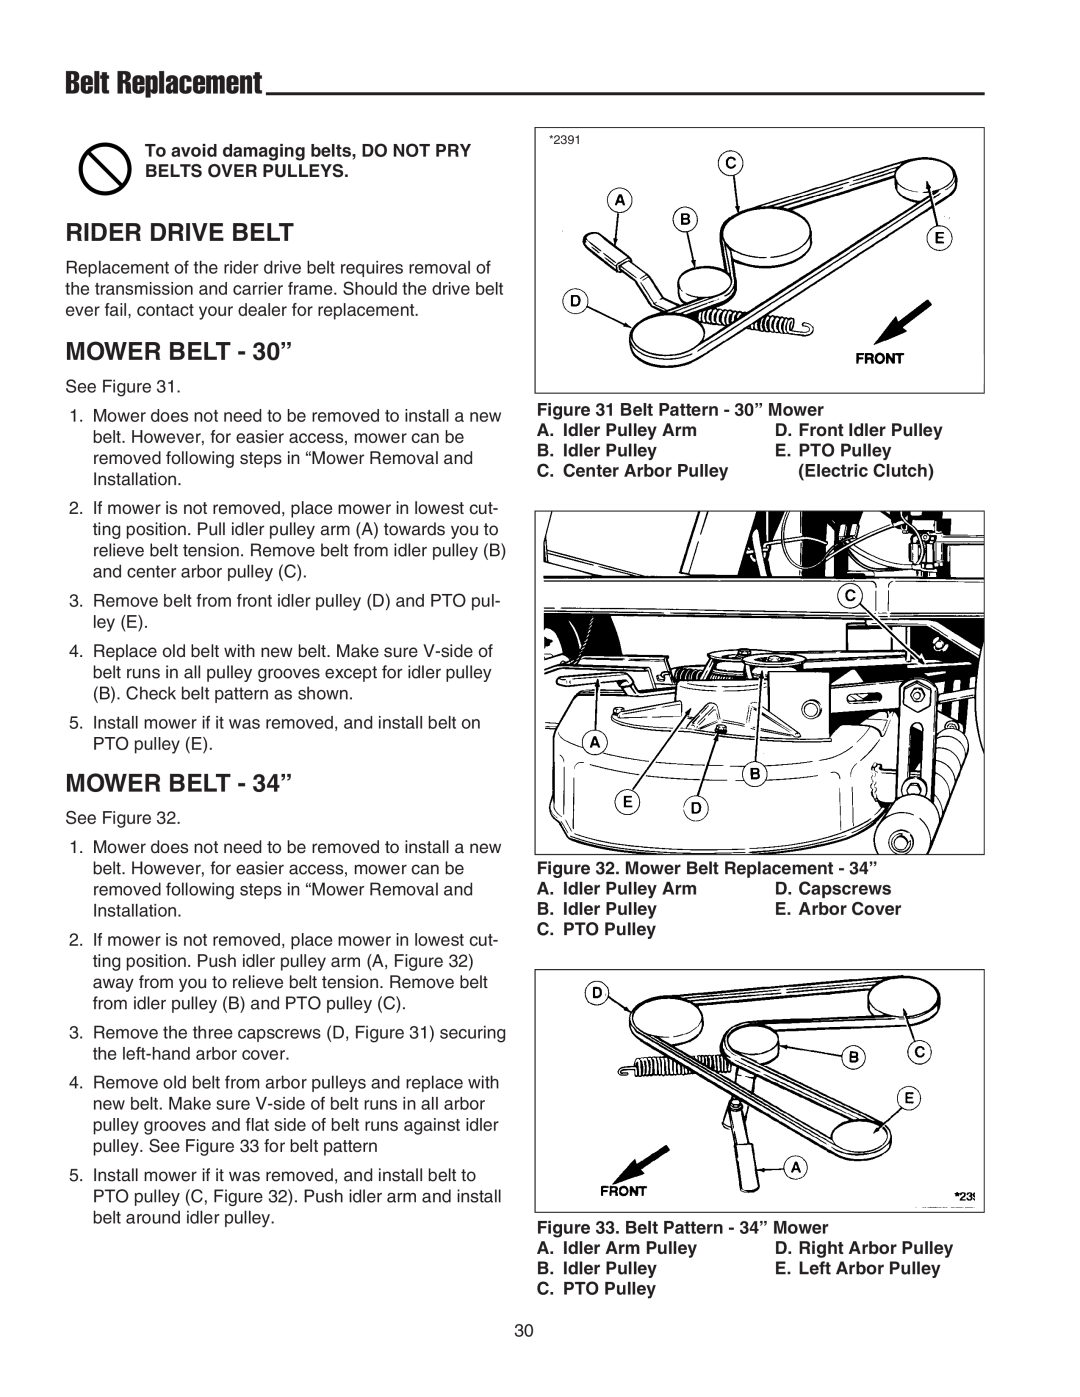 Snapper 400 Series manual Belt Replacement, Rider Drive Belt, MOWER BELT - 30”, MOWER BELT - 34” 